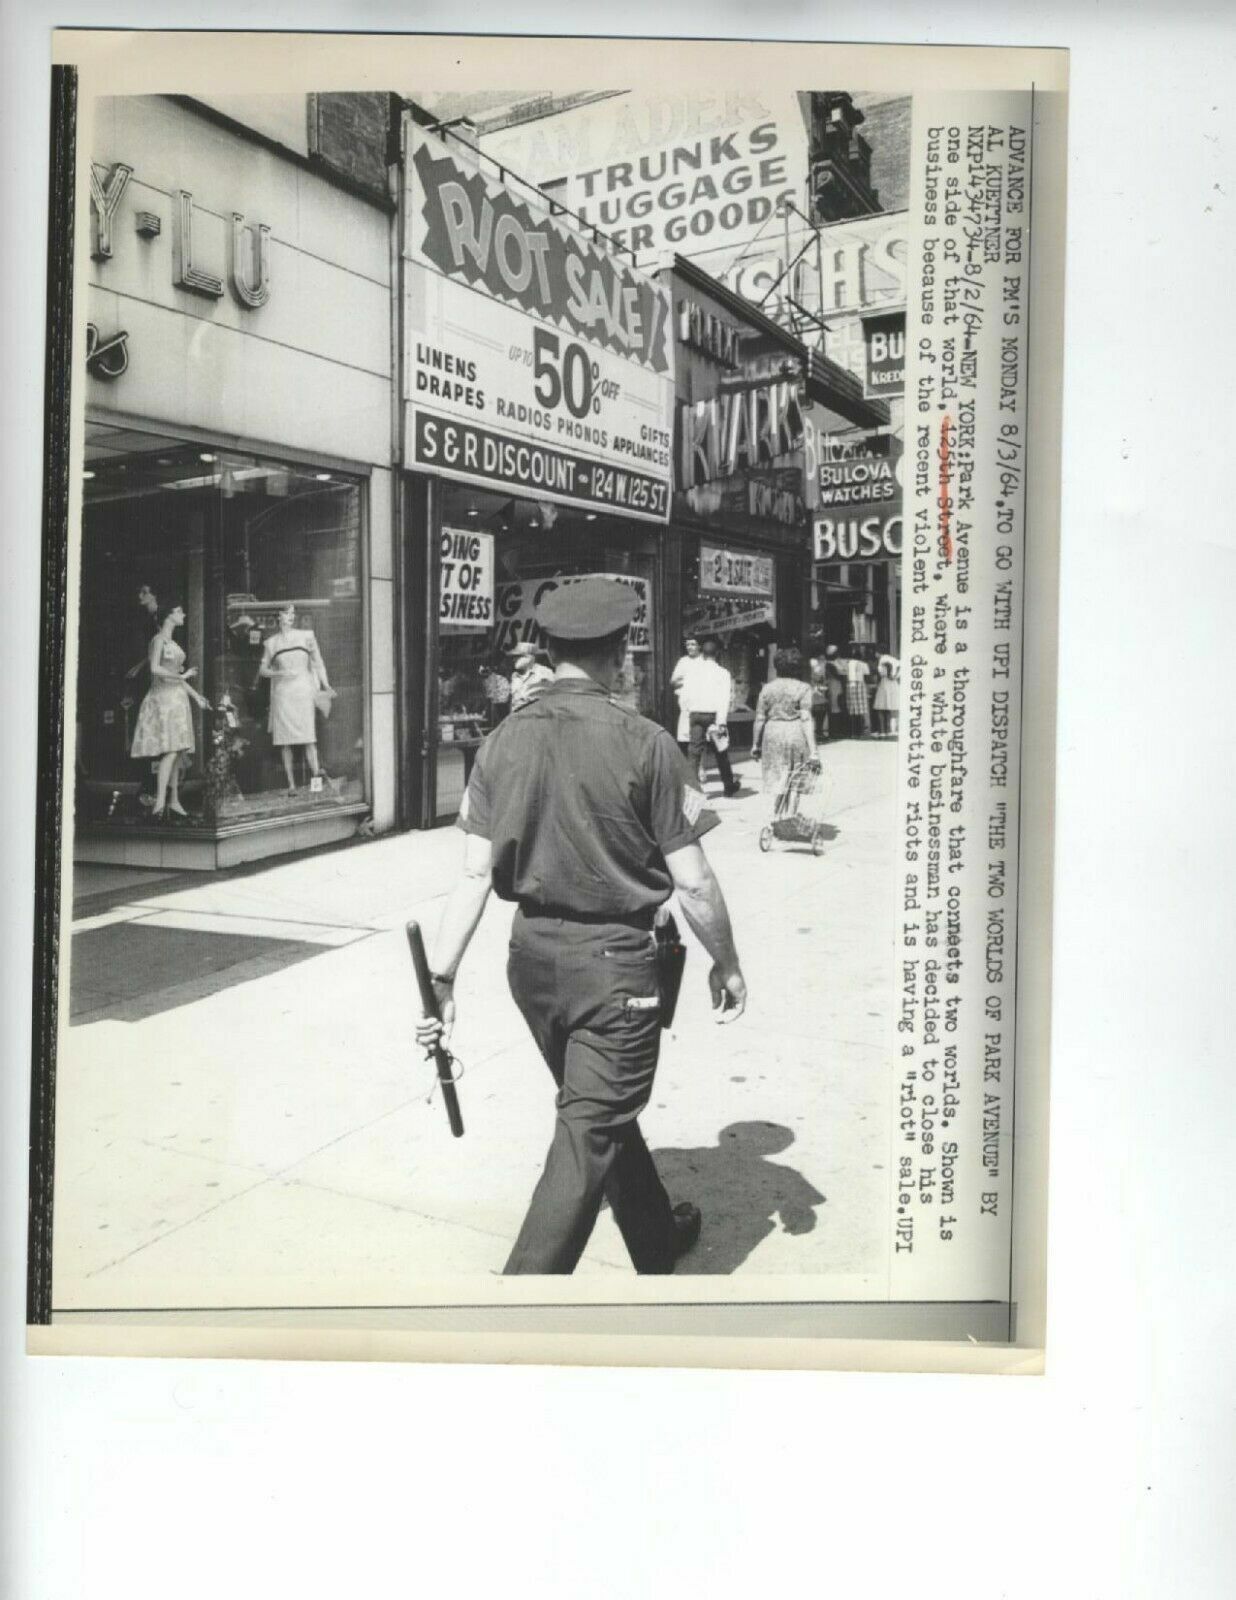 FOTO DE HARLEM RIOT 1964 125TH STREET NYC POLICÍA AFROAMERICANA DE COLECCIÓN